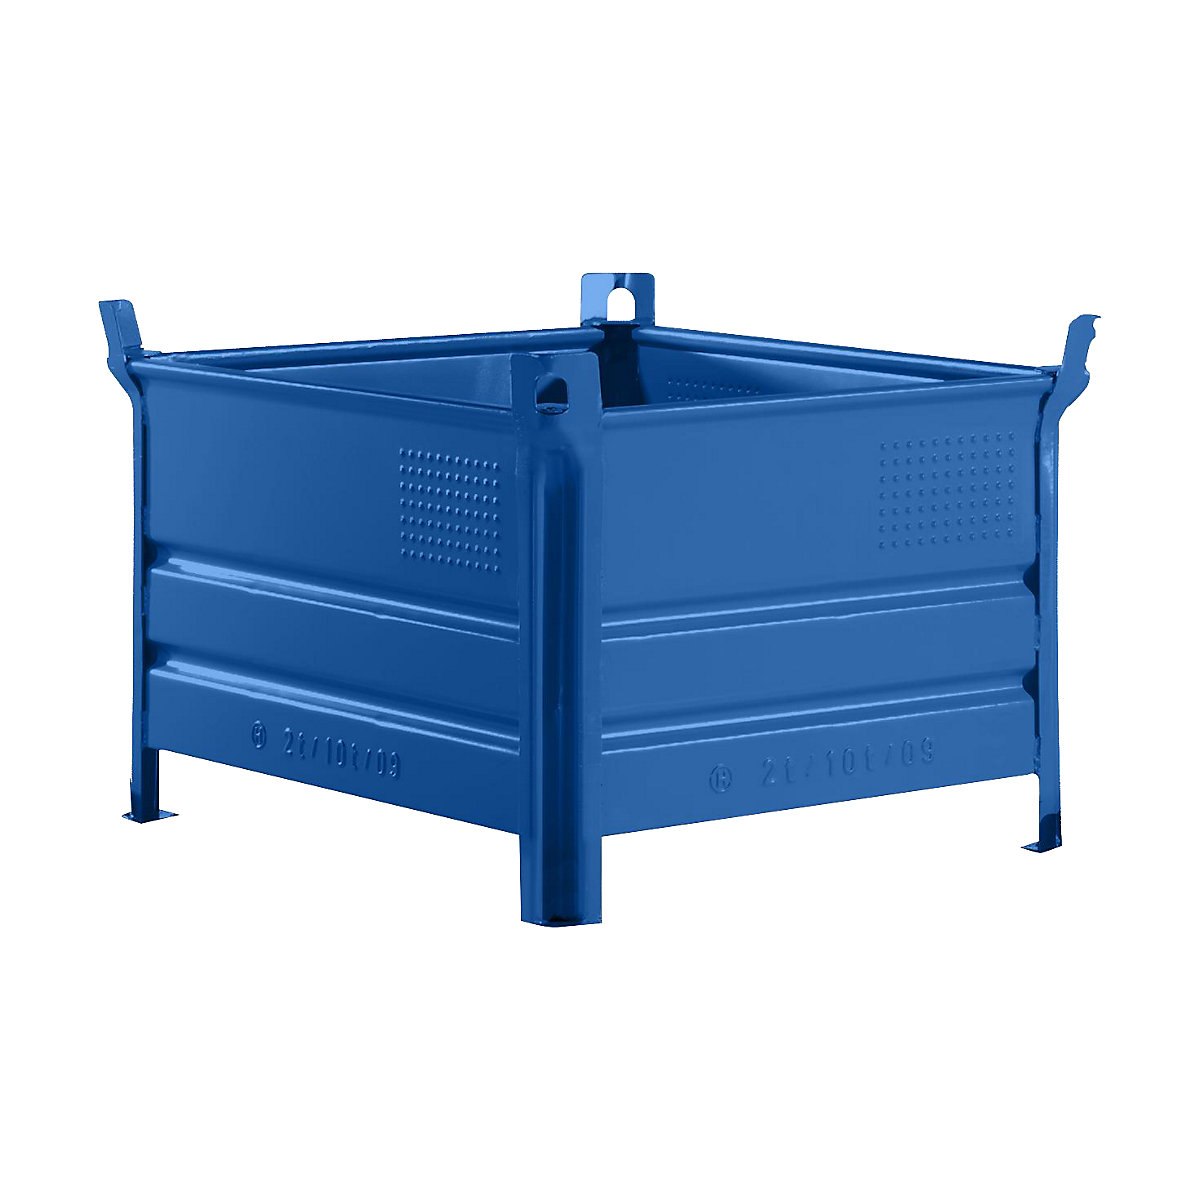 Stohovacia prepravka s plnou stenou – Heson, š x d 800 x 1000 mm, nosnosť 1000 kg, modrá, od 10 ks-7